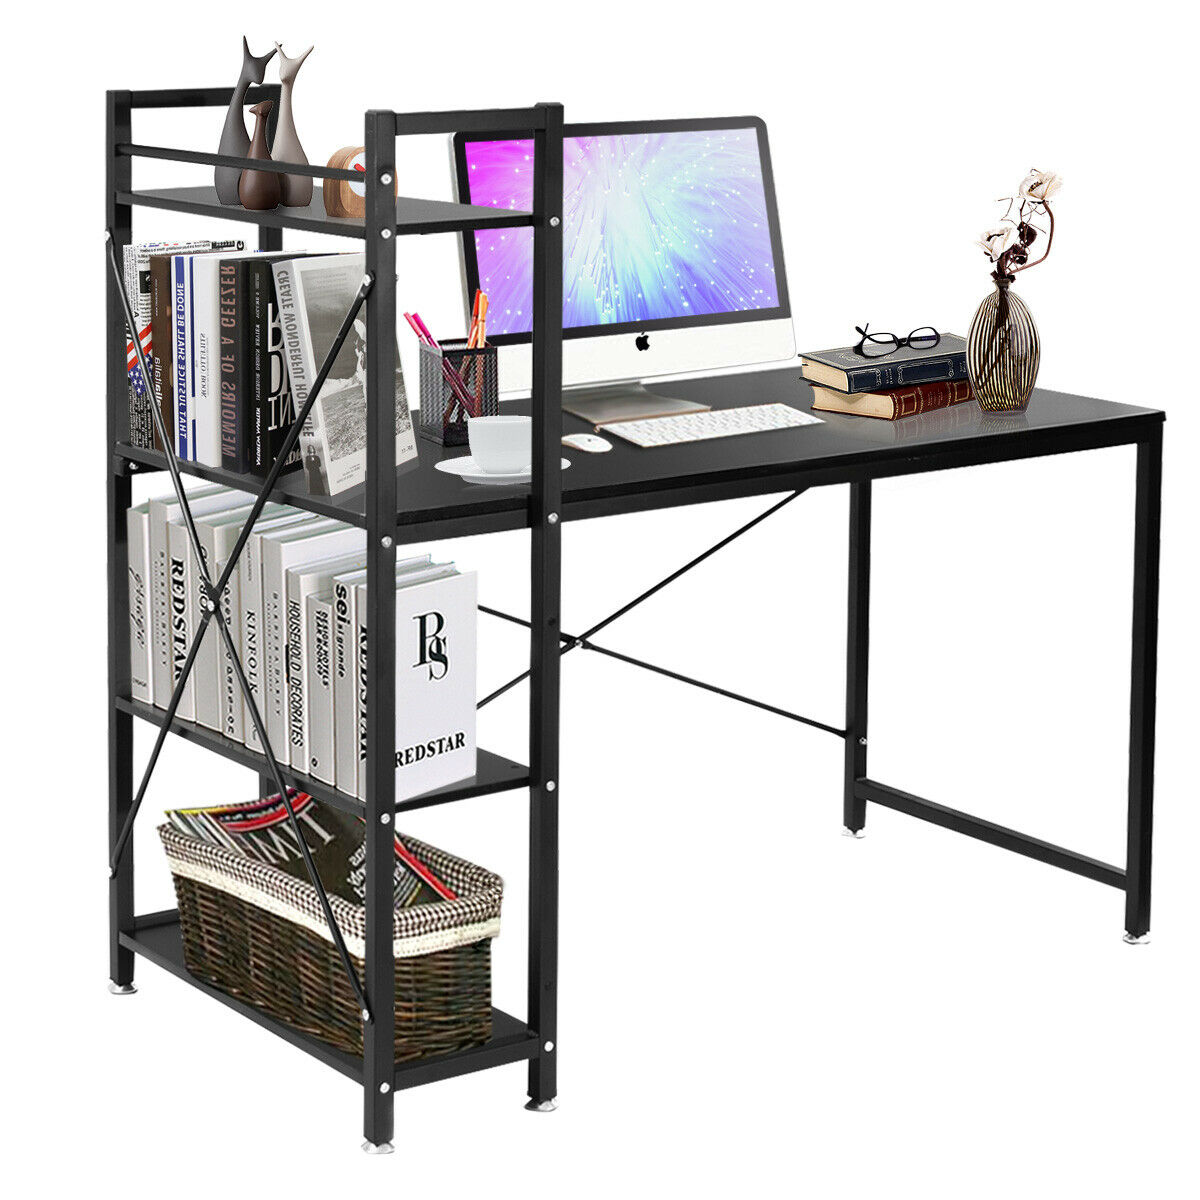 

Costway Современный компьютерный стол для ноутбука с 4-уровневой полкой Книжная полка Рабочая станция для ПК Рабочий стол для домашнего офиса